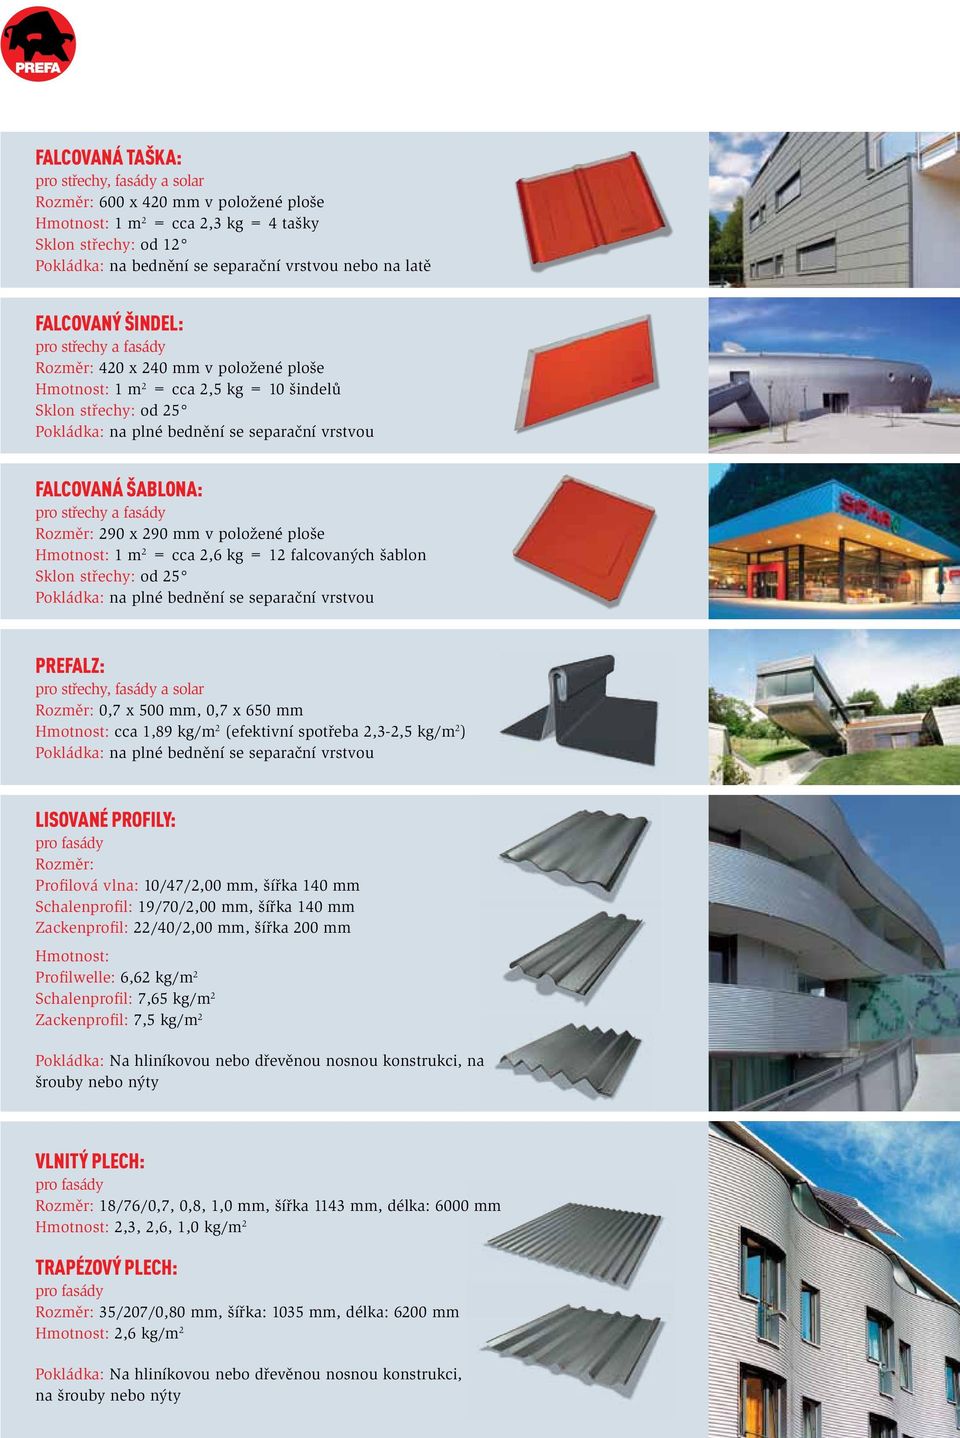 šablona: pro střechy a fasády Rozměr: 290 x 290 mm v položené ploše Hmotnost: 1 m 2 = cca 2,6 kg = 12 falcovaných šablon Sklon střechy: od 25 Pokládka: na plné bednění se separační vrstvou PREFALZ: